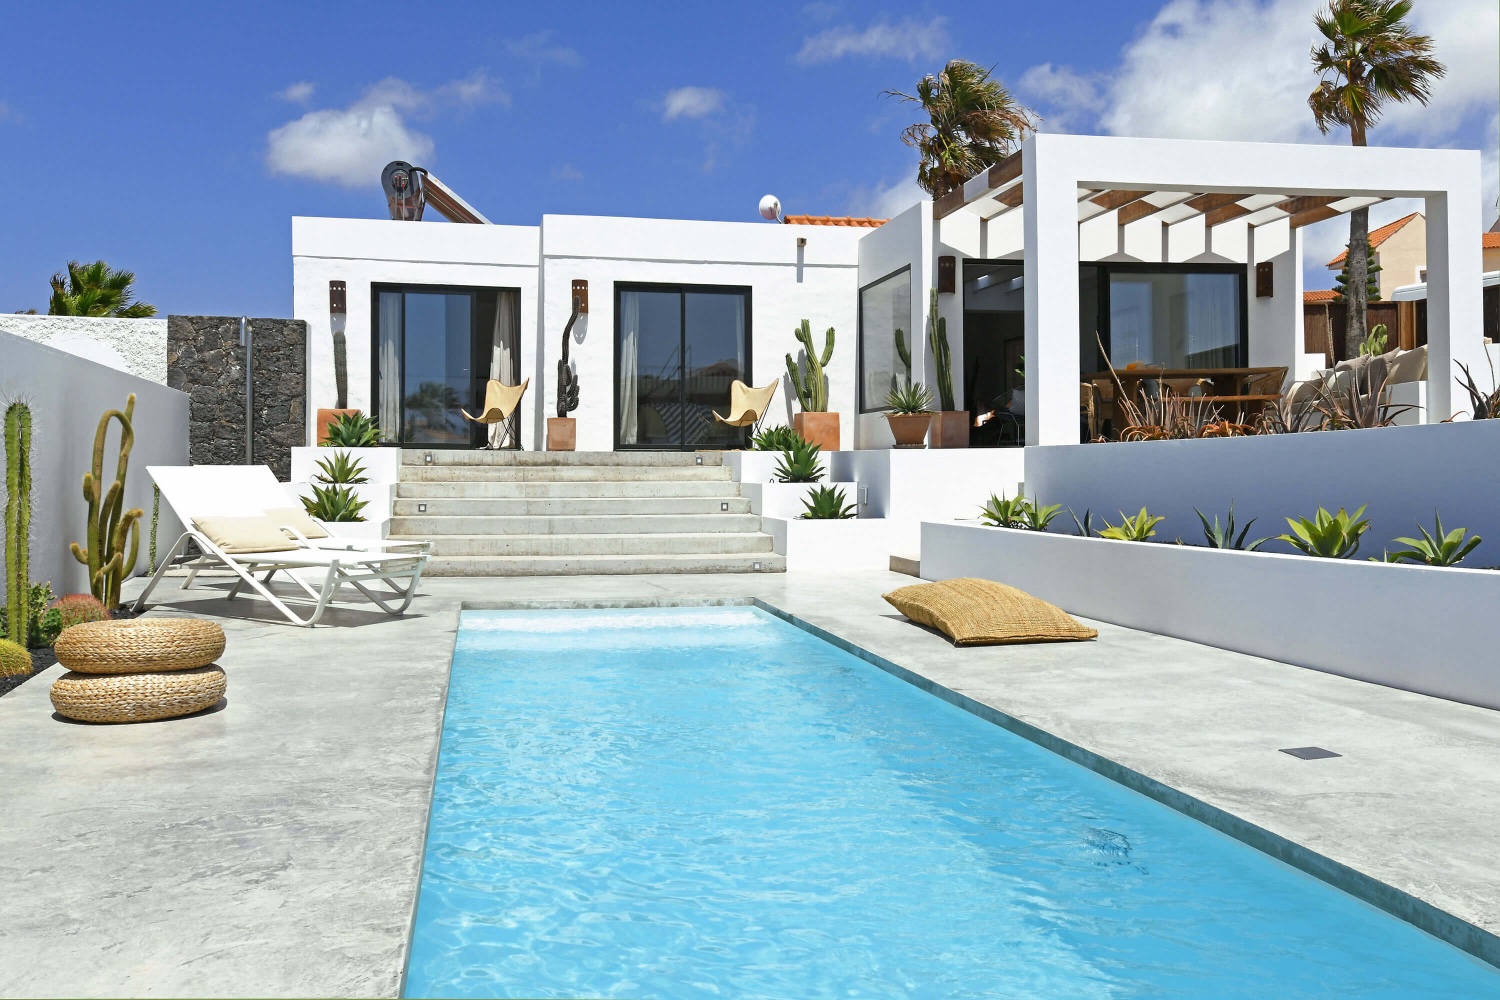 Denne usædvanligt smukke og moderne villa med en stor privat pool er smagfuldt møbleret og perfekt beliggende kun få minutters gang fra de smukke strande La Pared og Viejo Rey.